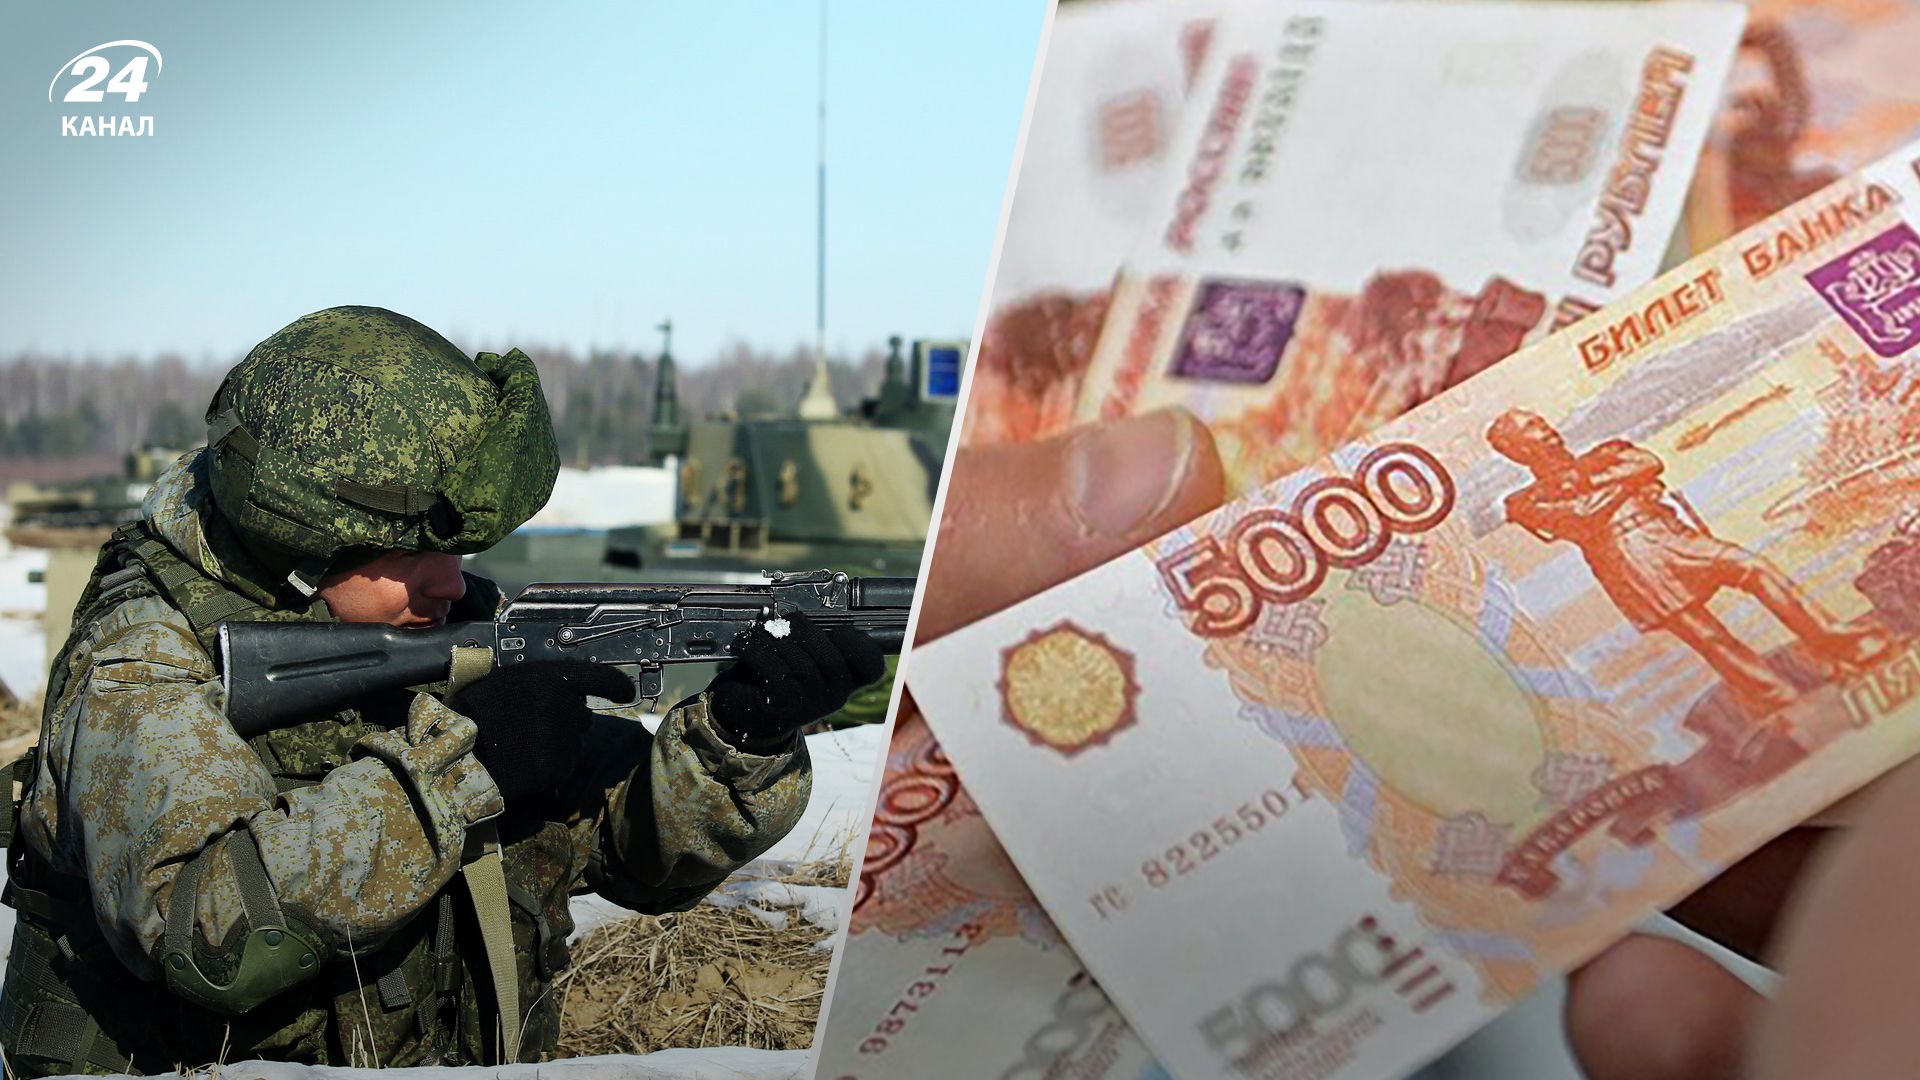 Російські окупанти обманули жителів тимчасово окупованих територій з грошима